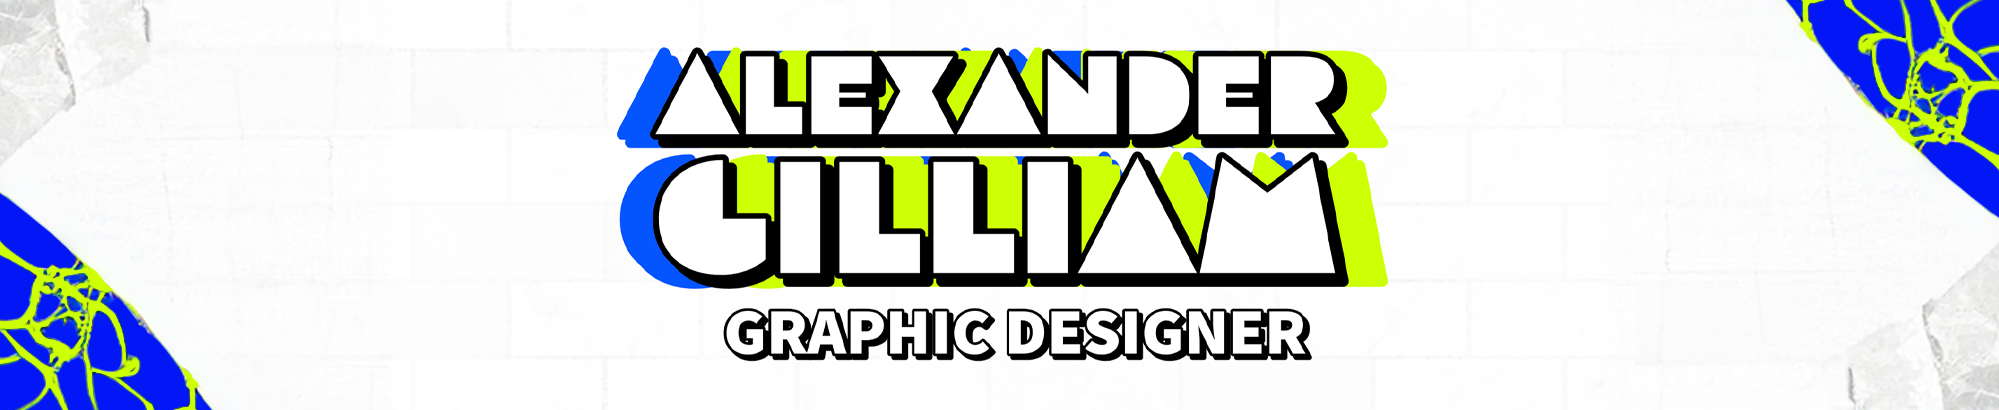 Banner profilu uživatele Alexander Gilliam